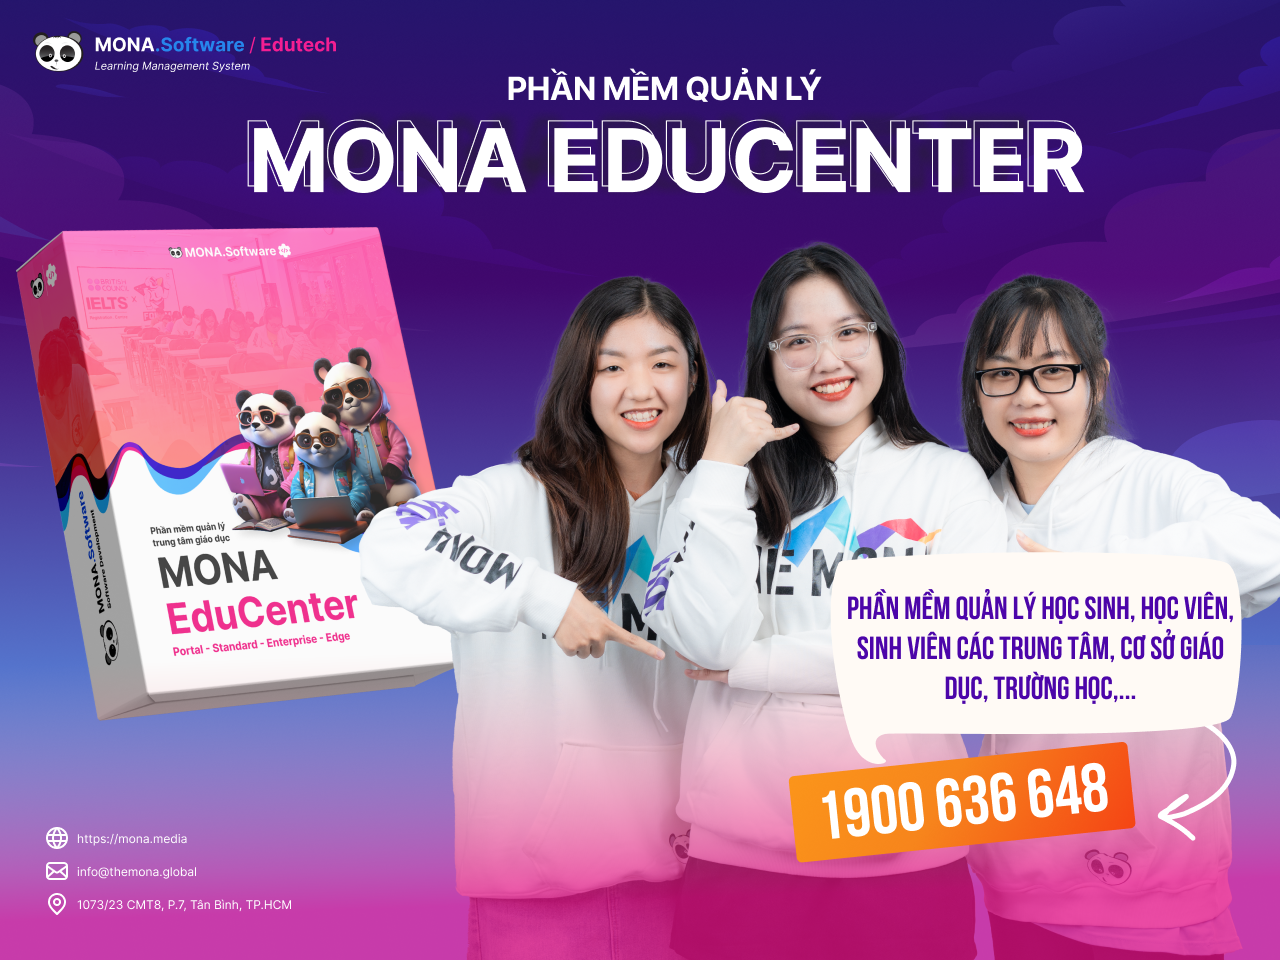 Phần mềm quản lý trung tâm ngoại ngữ MONA Educenter